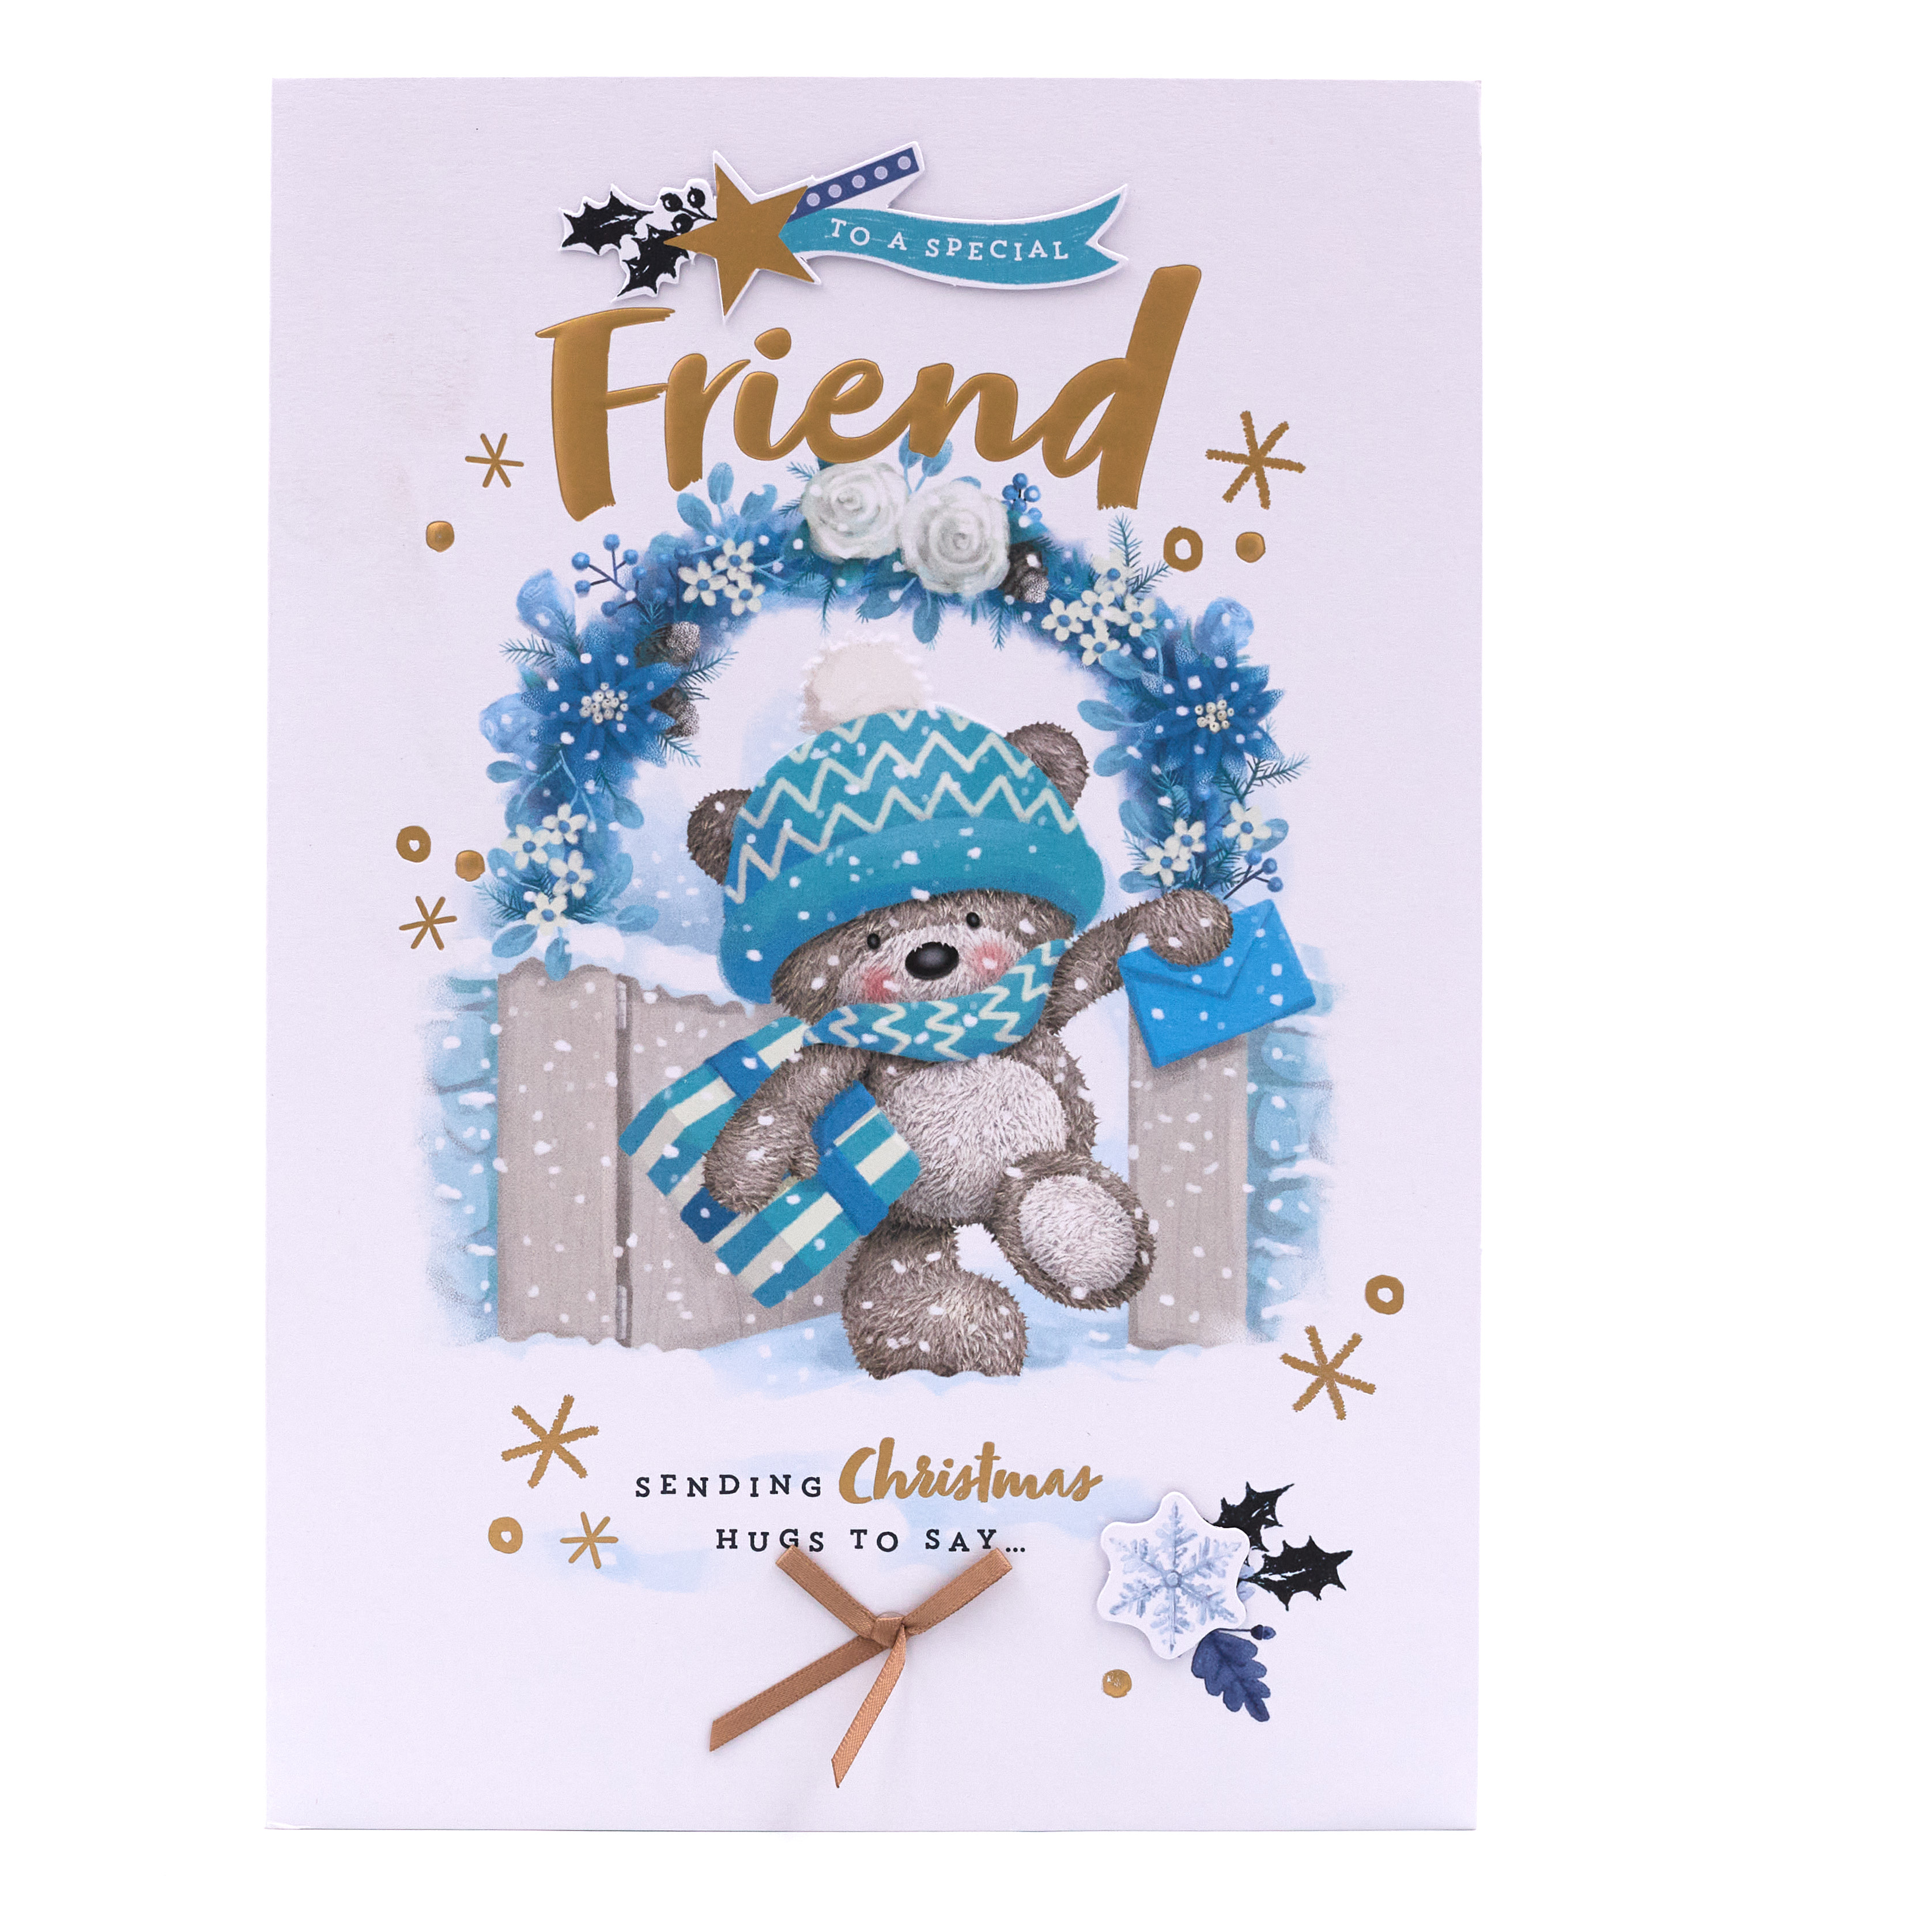 Hugs Bear Christmas Card - Friend, Cute Bear With Presents